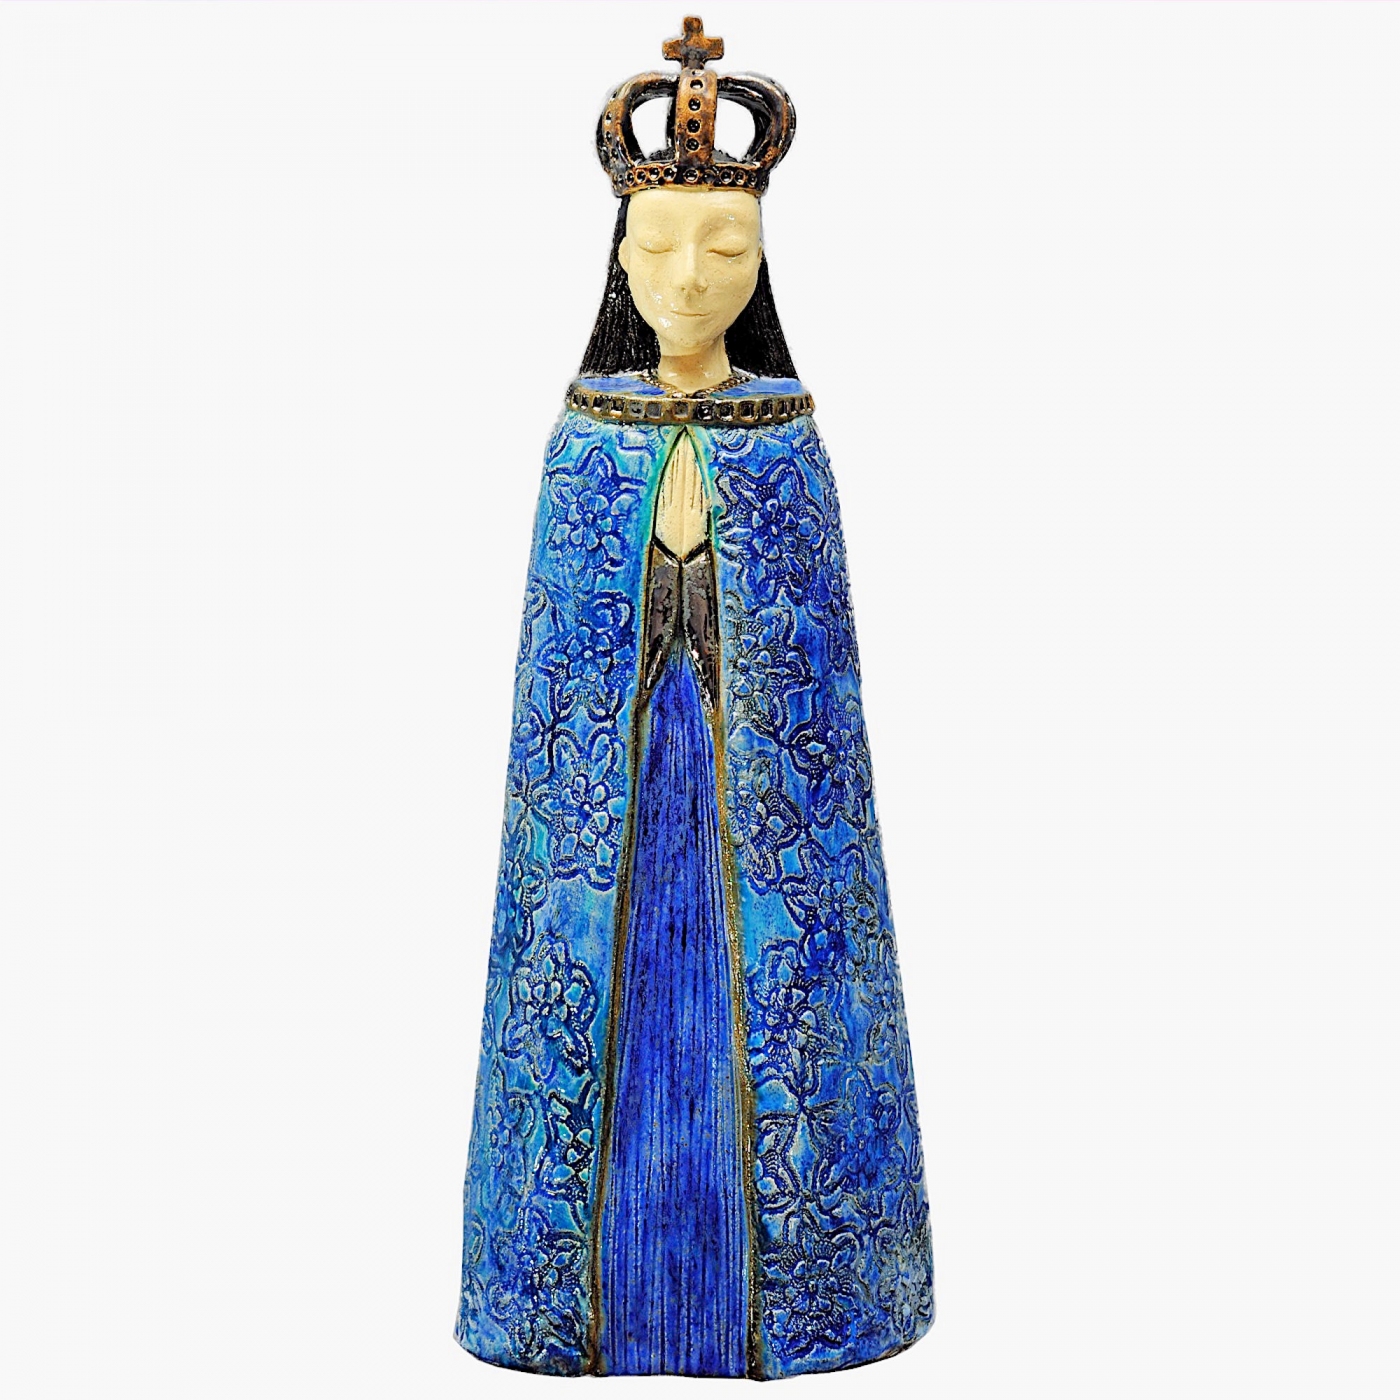 Figurka przedstawia Matkę Bożą z koroną na głowie w niebieskiej szacie